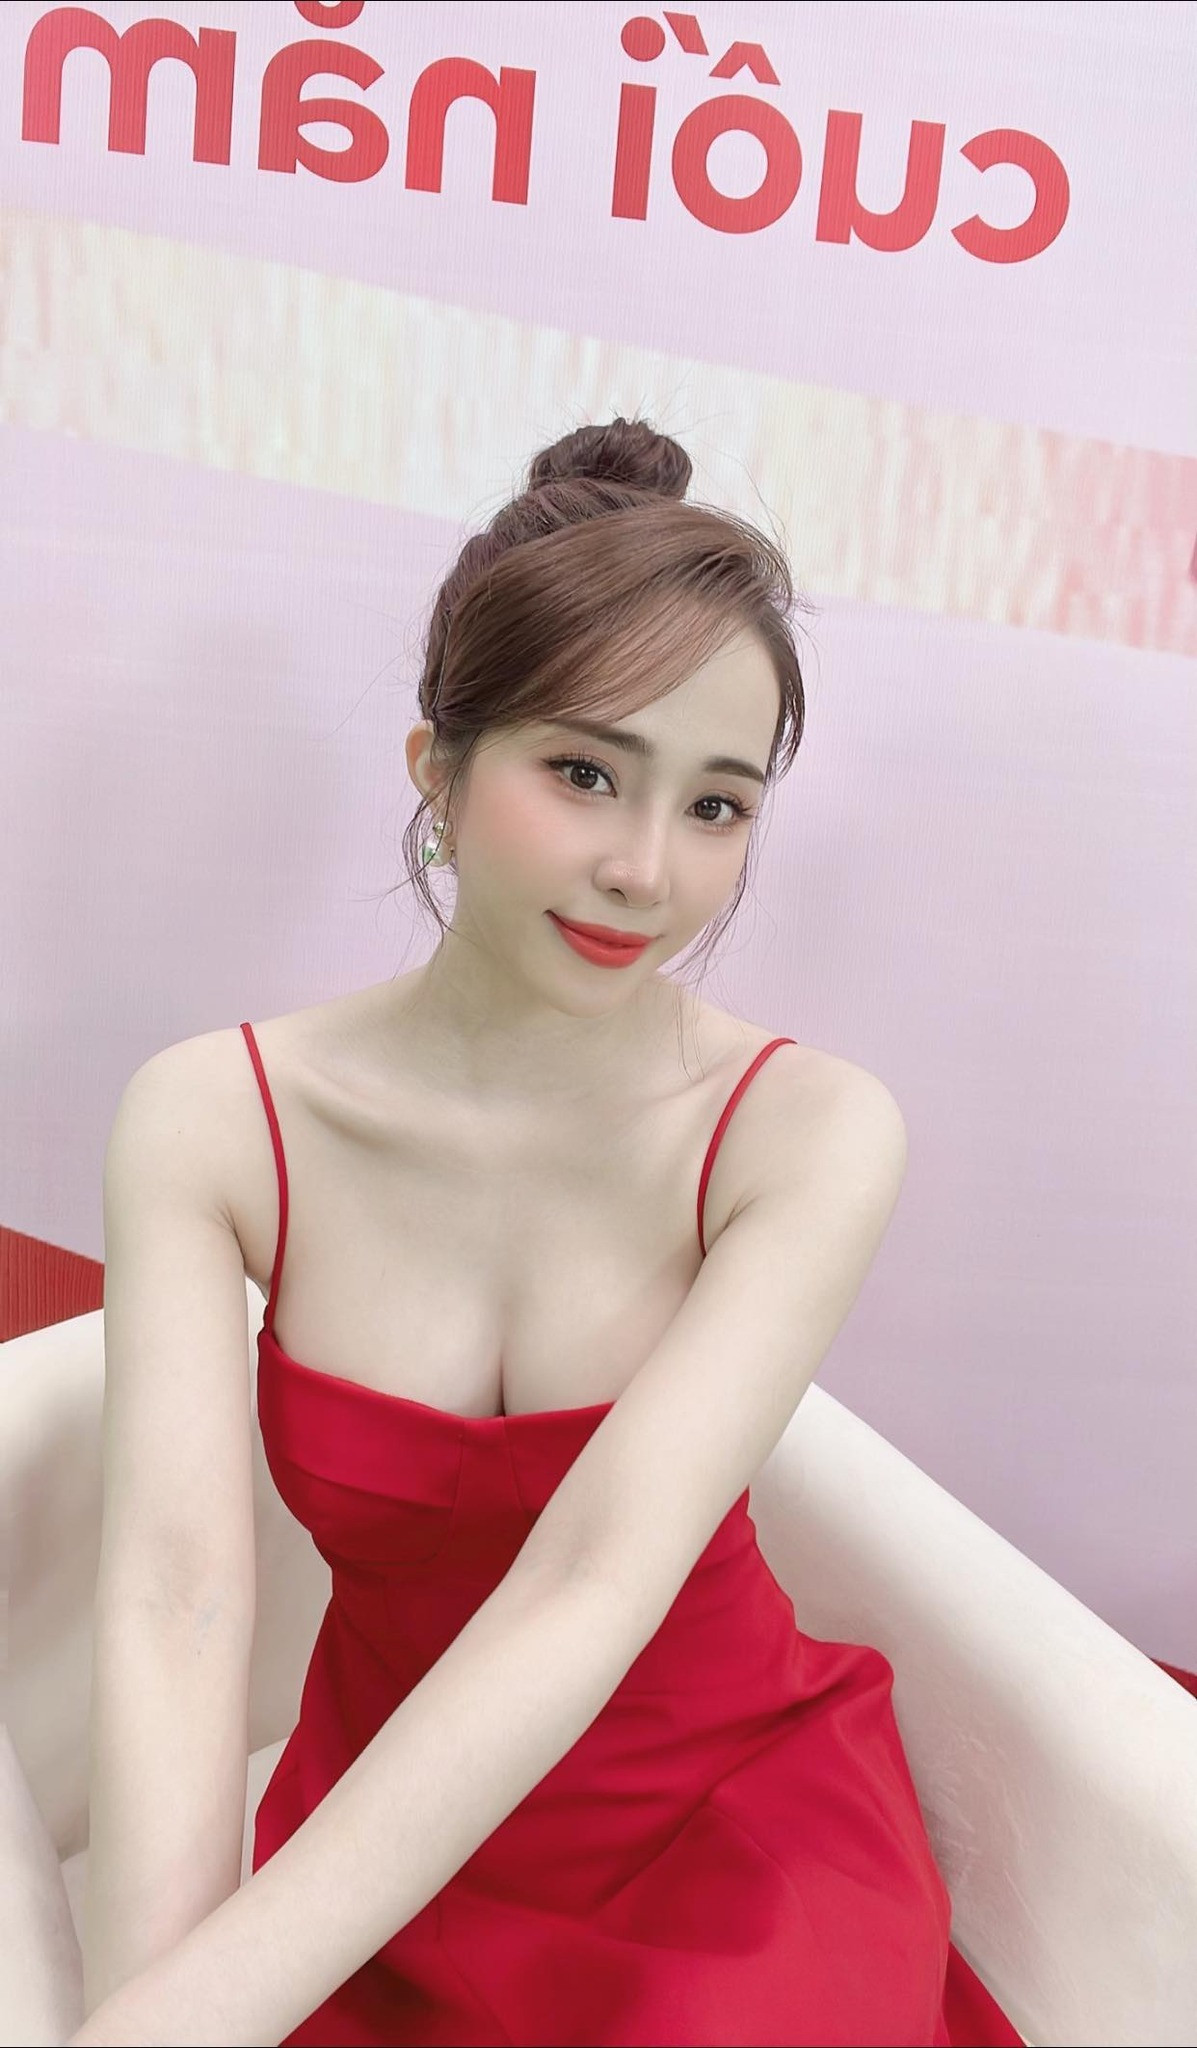 5 sao nữ nghiện khoe body gợi cảm trong showbiz Việt